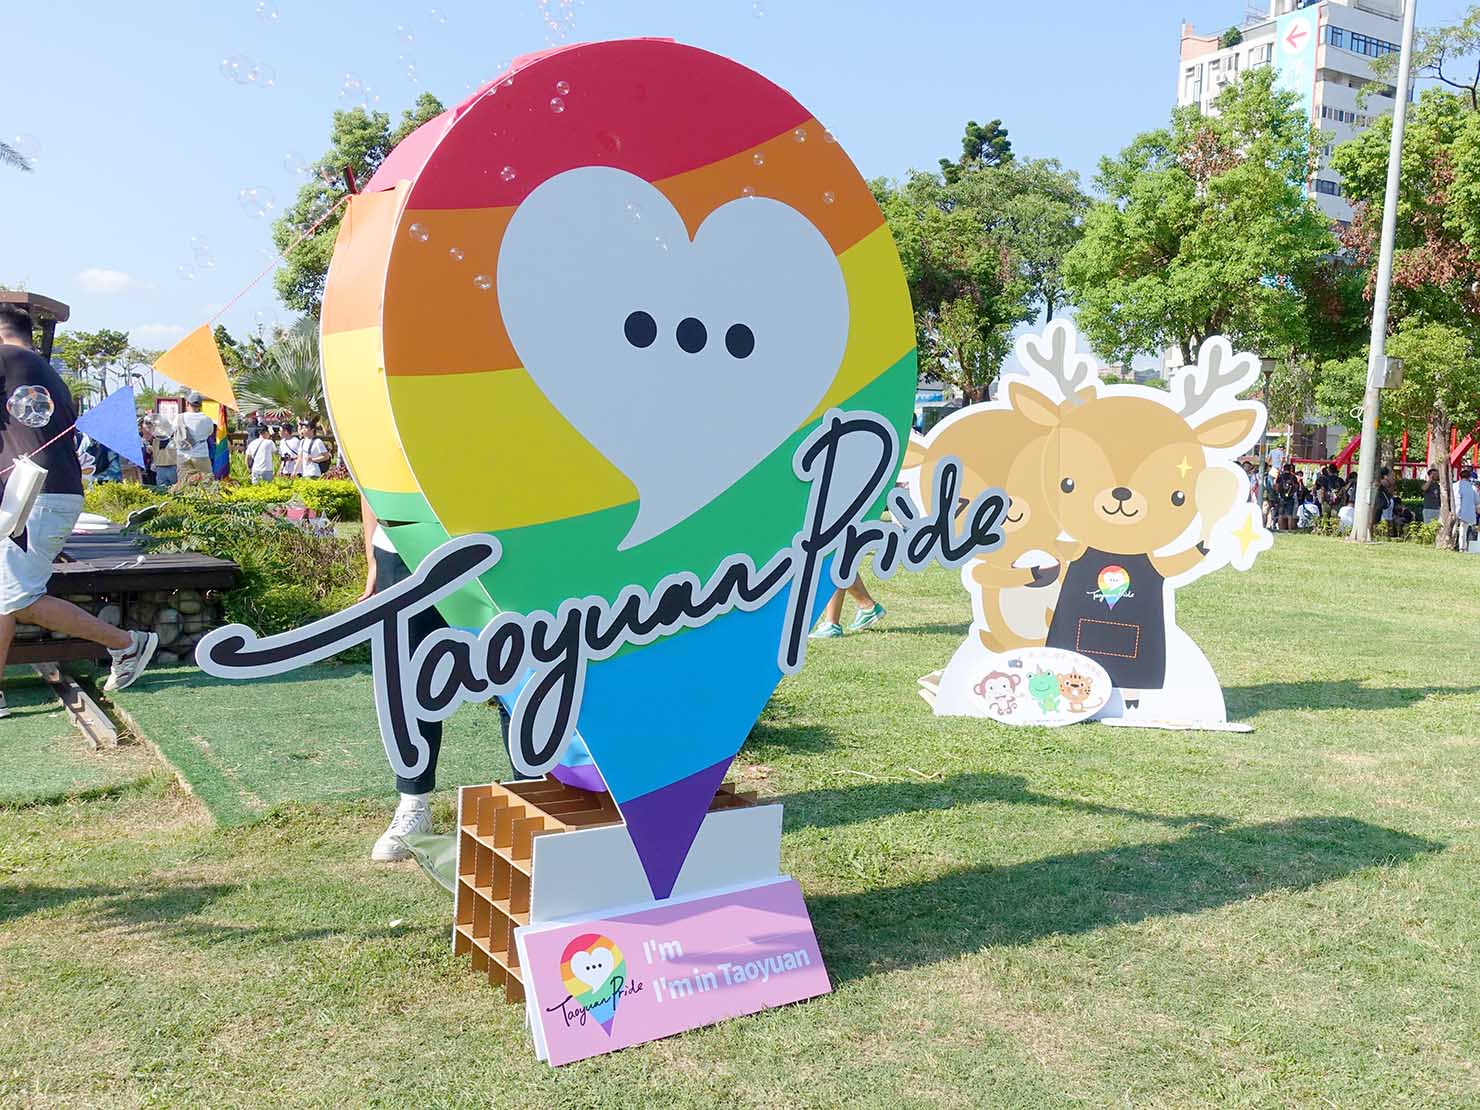 台湾・桃園のLGBTプライド「桃園彩虹野餐日」2020会場に登場したロゴのオブジェ